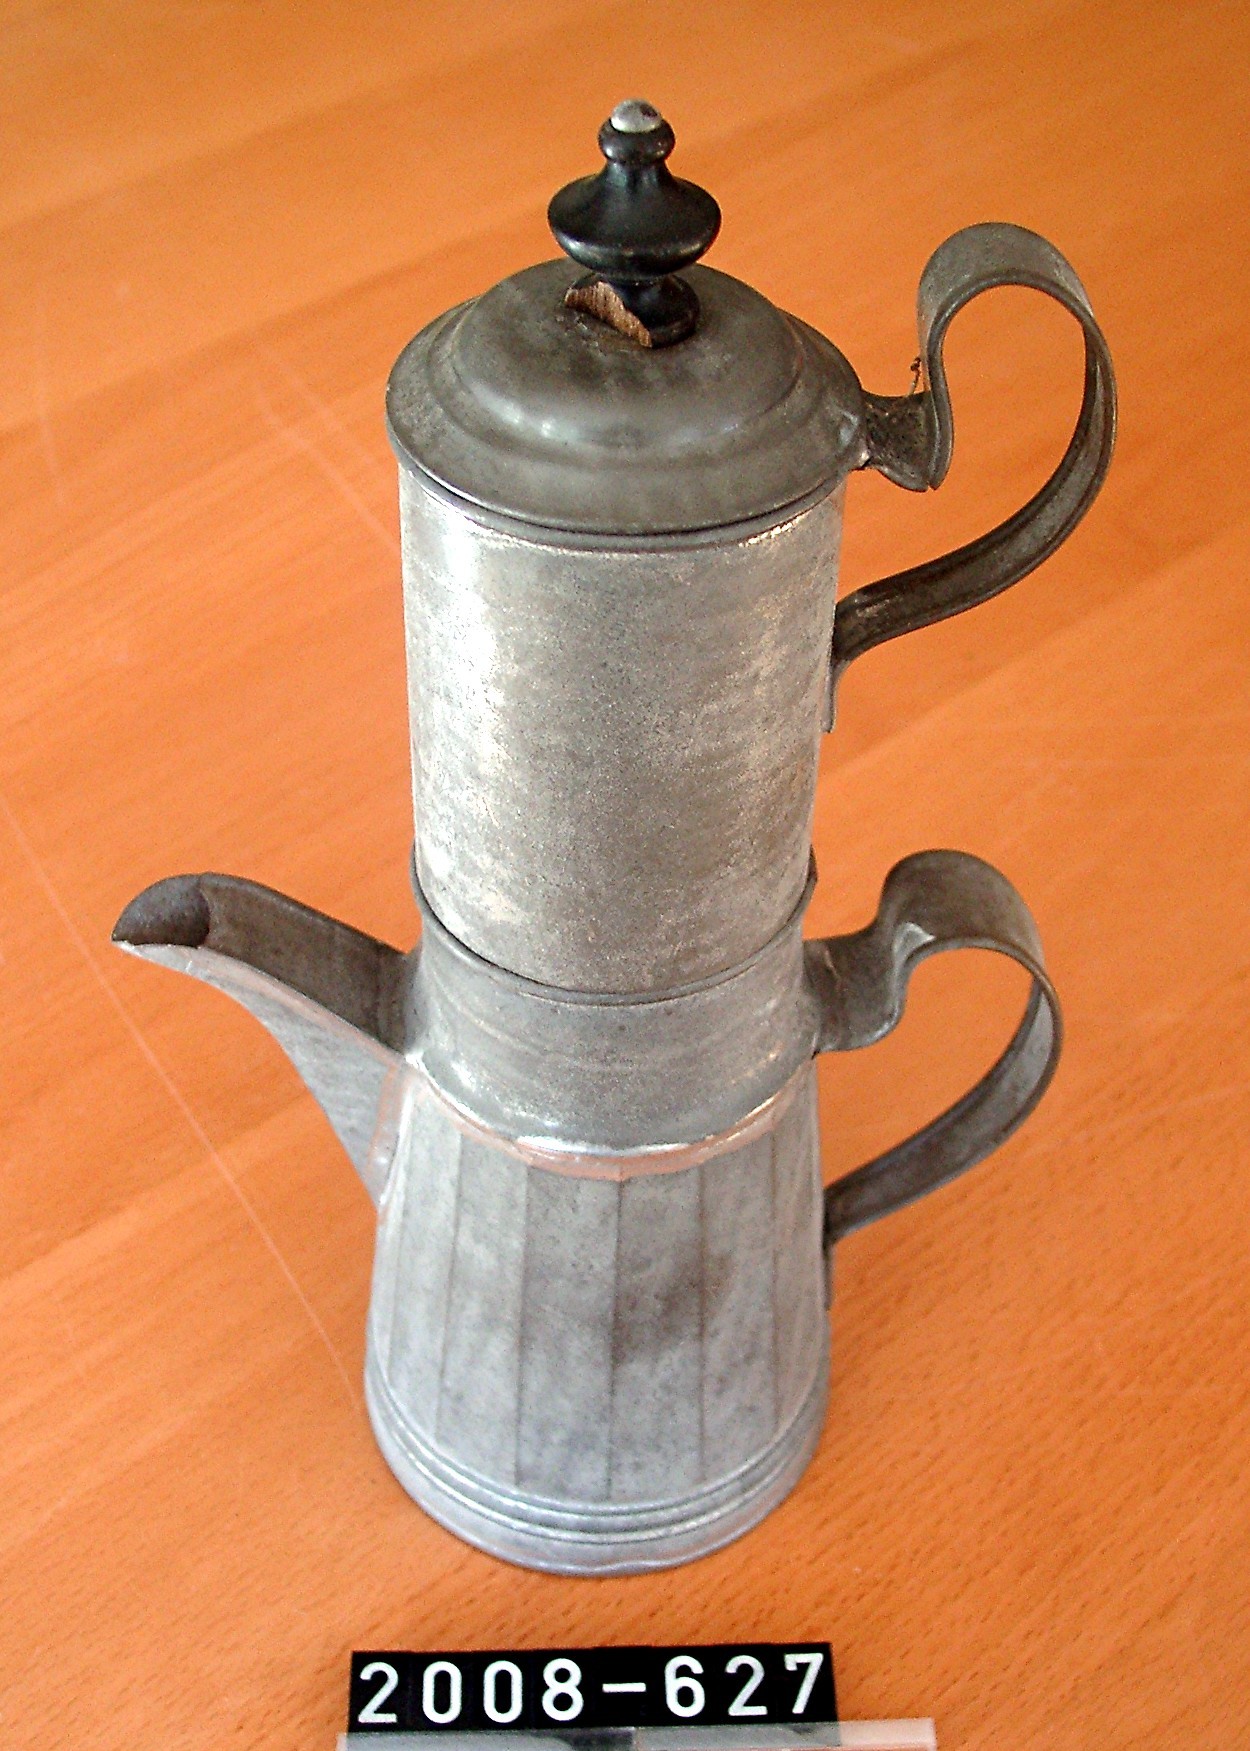 Filterkanne; Filtertopf; Kaffeemaschine; aus Weißblech; 19. Jh. (Stadtmuseum Bad Dürkheim, Museumsgesellschaft Bad Dürkheim e.V. CC BY-NC-SA)